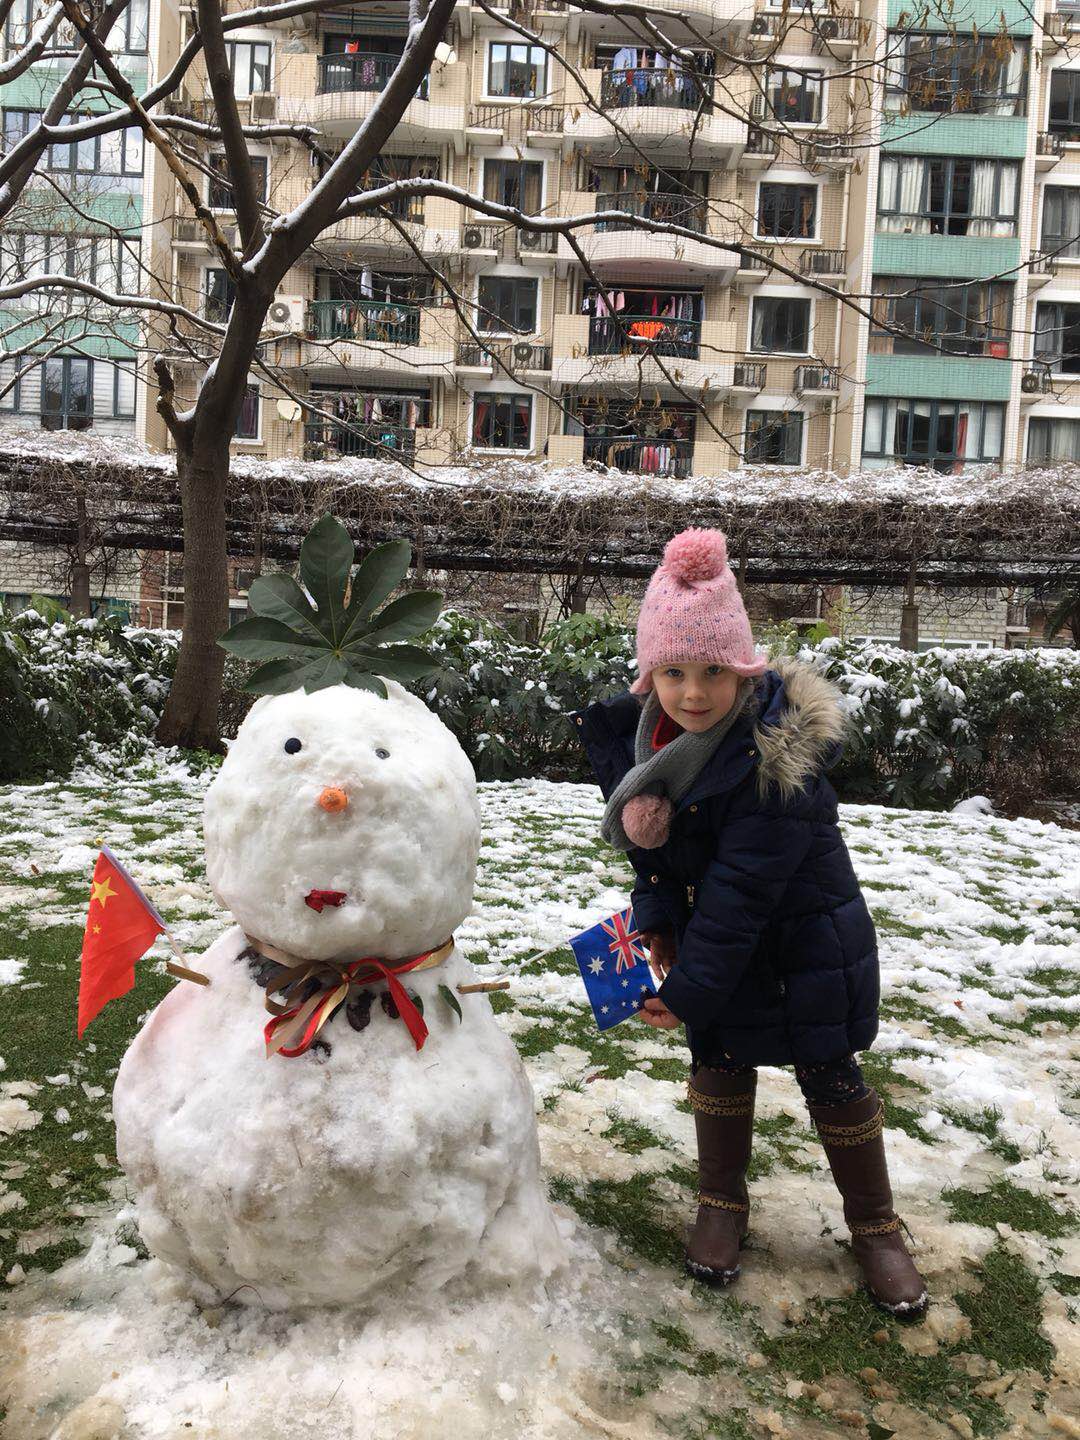 PHOTOS: Shanghai's Wackiest, Weirdest and Funniest Snowmen – That’s ...